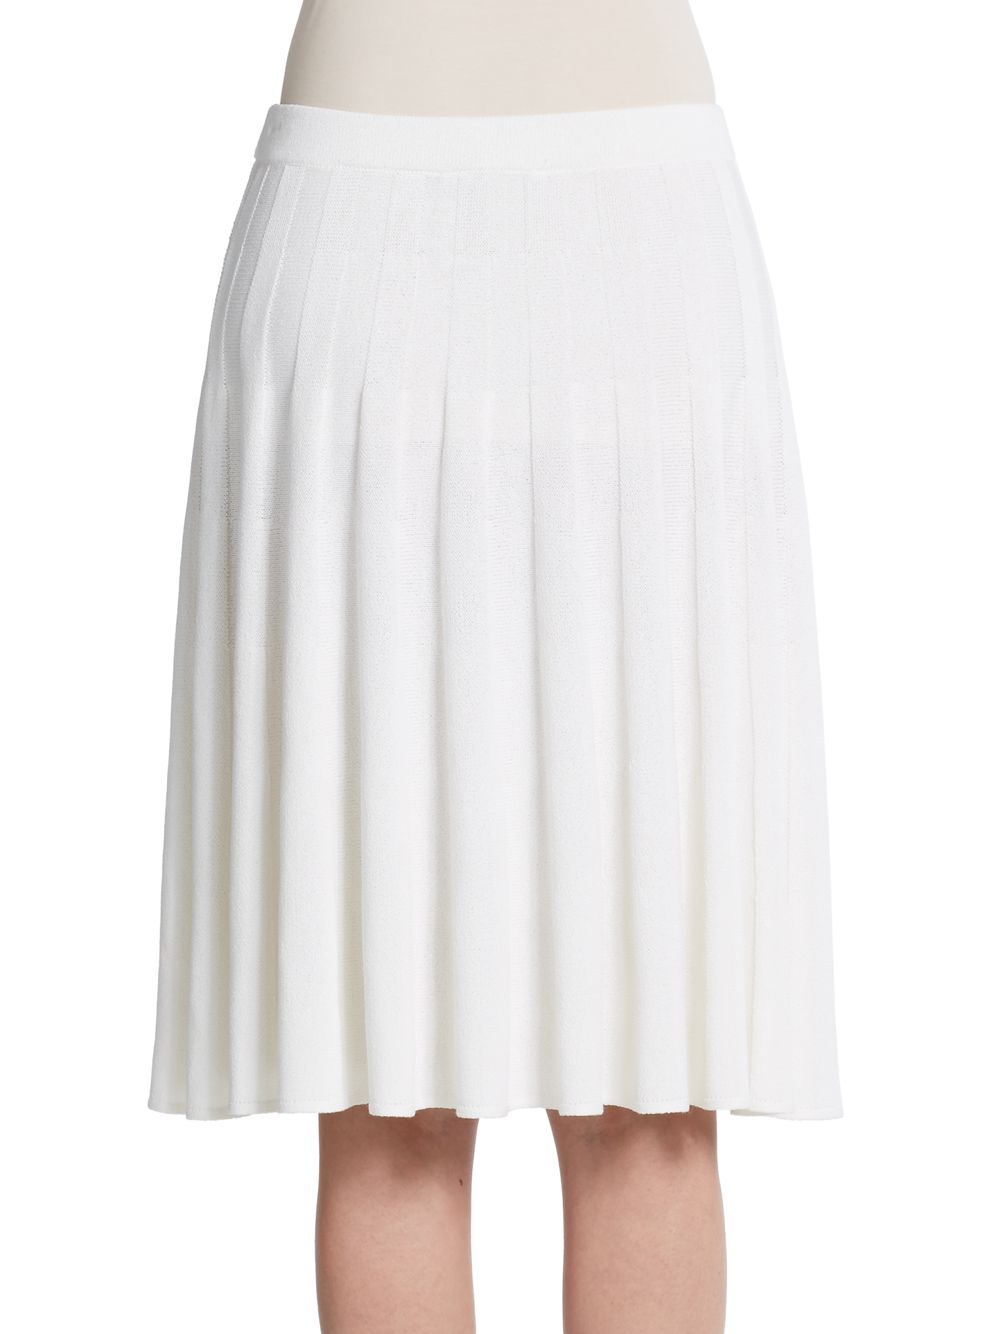 St. John Fluted Pleat Skirt in White - Lyst